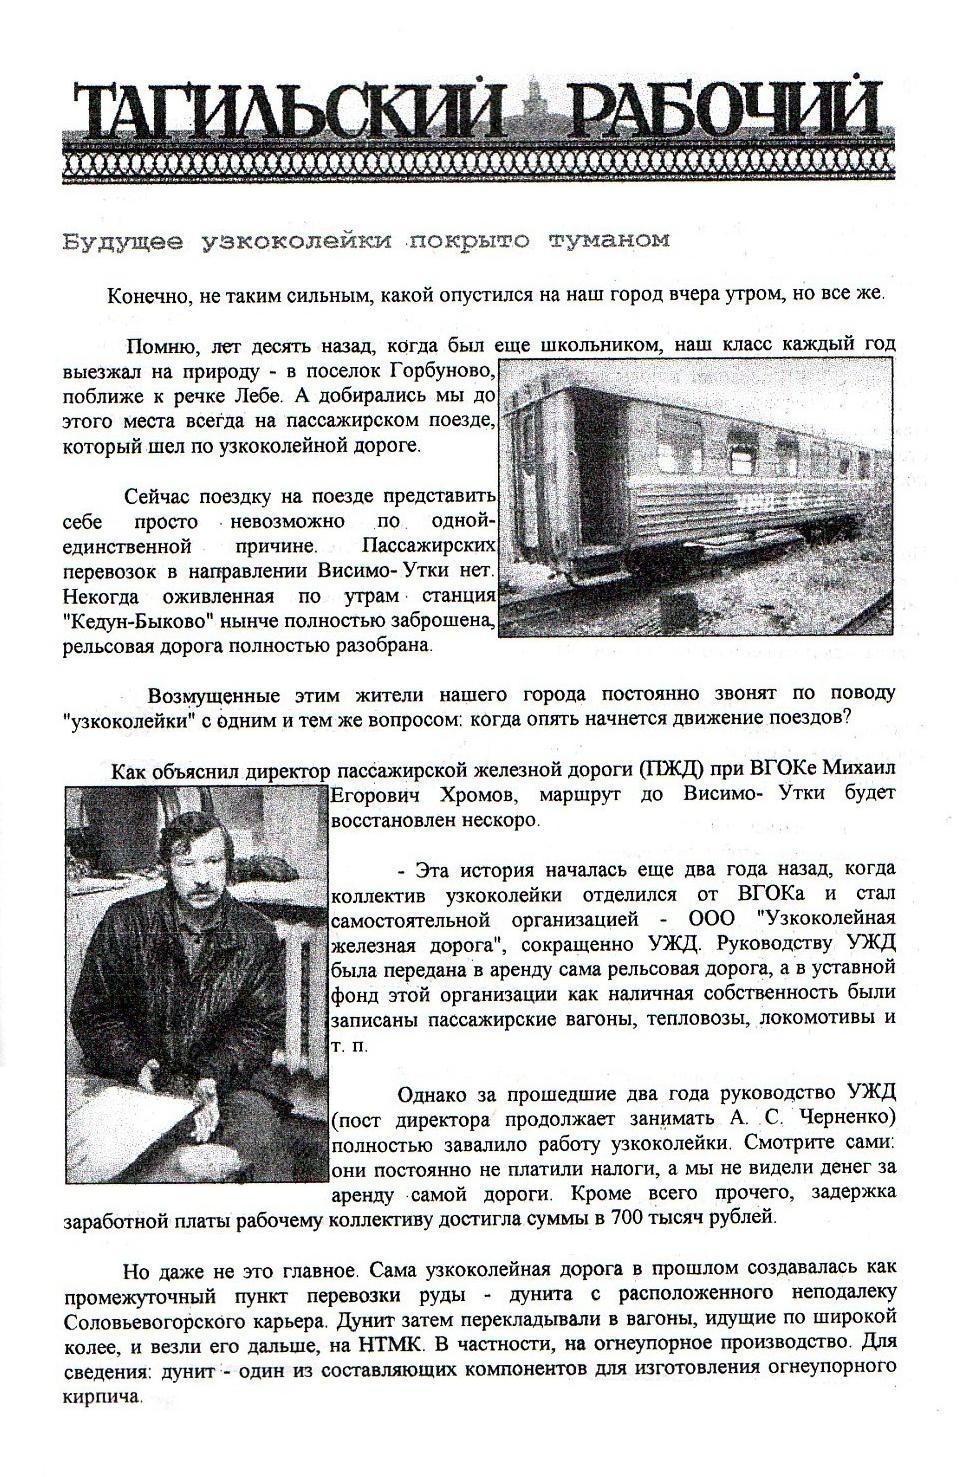 Висимо-Уткинская узкоколейная железная дорога - материалы средств массовой информации